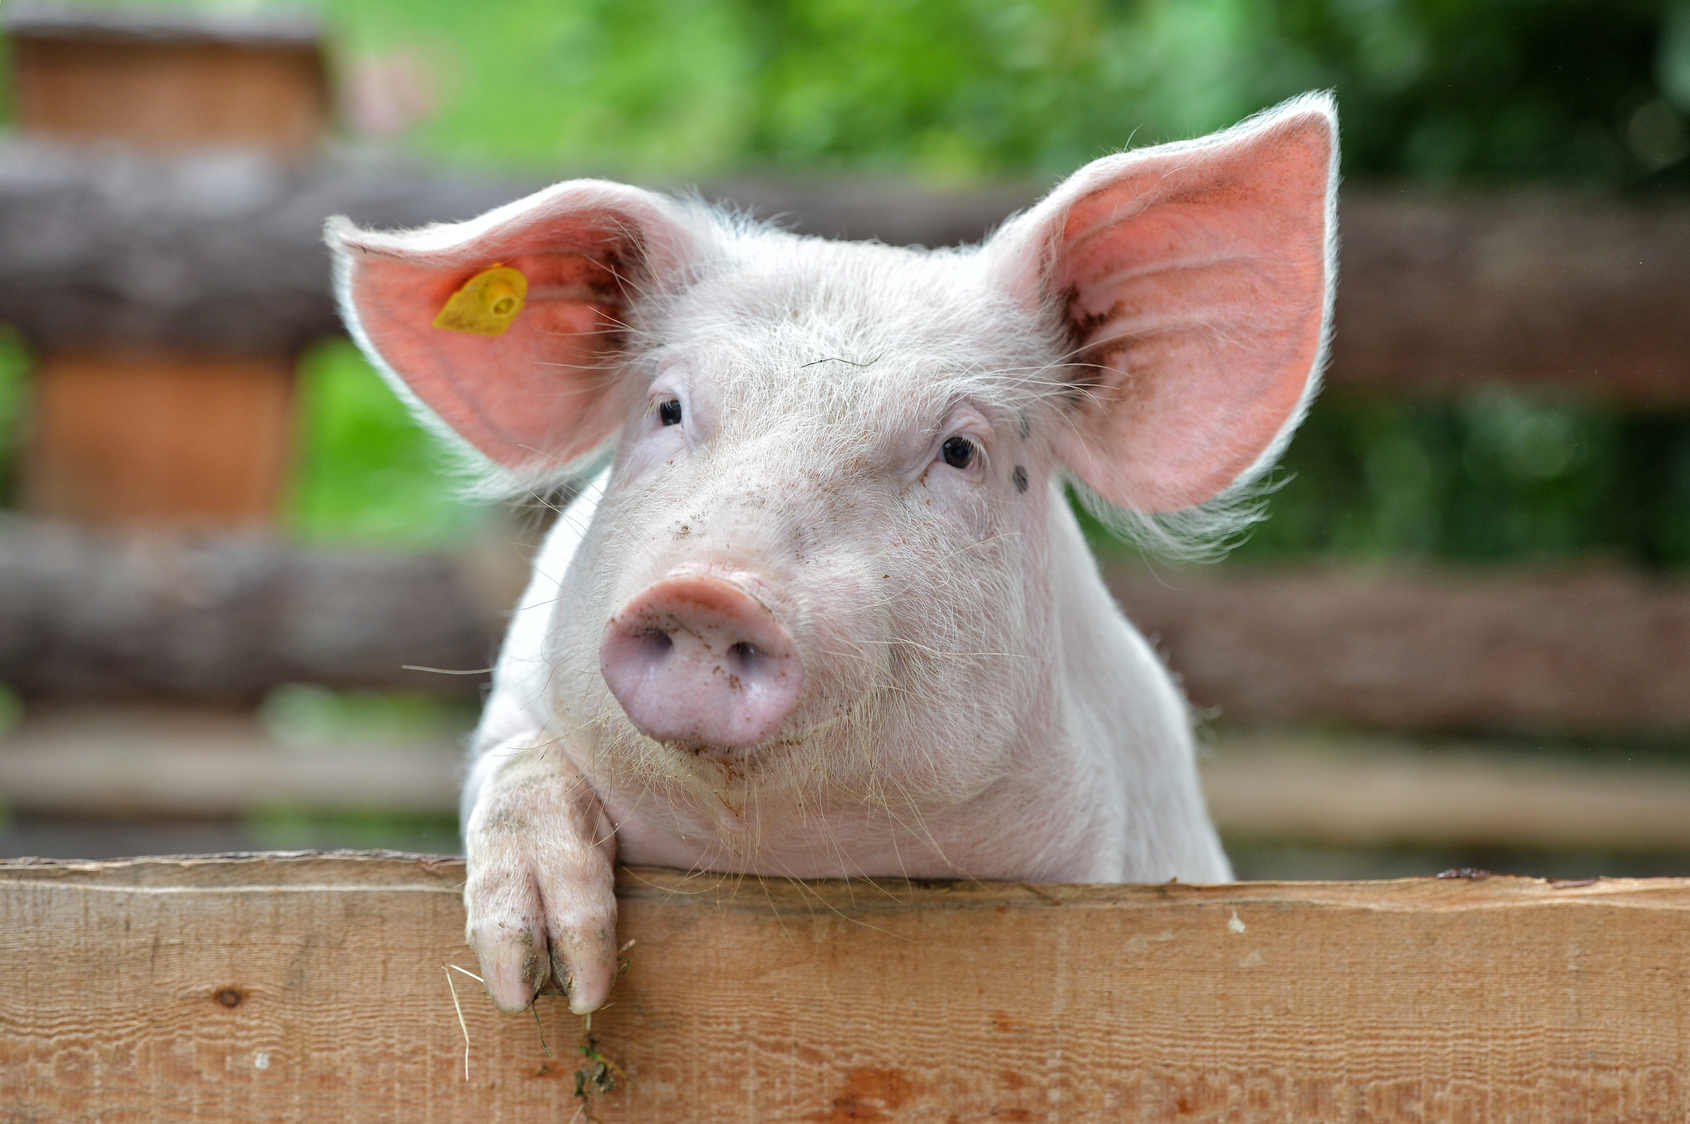 Целью поправки является, прежде всего, упрощение и снижение административного бремени, связанного с идентификацией и регистрацией сельскохозяйственных животных, а также повышение гибкости при выборе методов маркировки свиней, используемых свиноводами